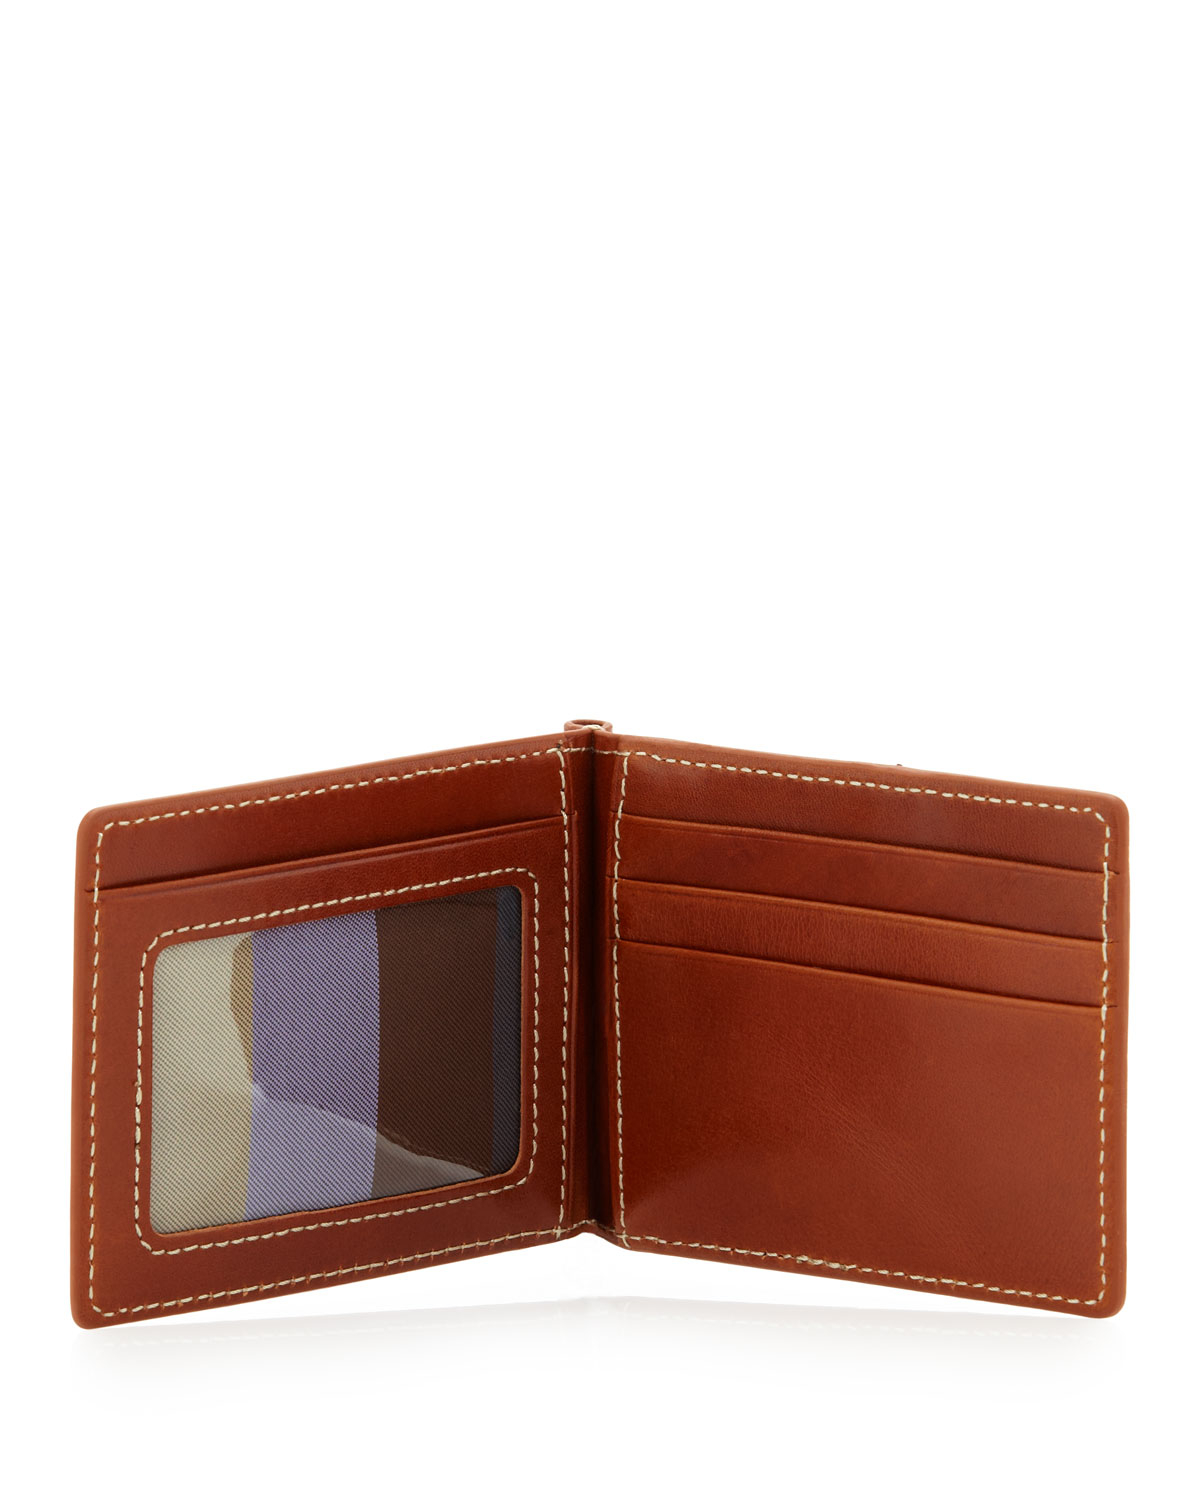 Lyst - Neiman Marcus Flip Wallet With Money Clip in Brown for Men